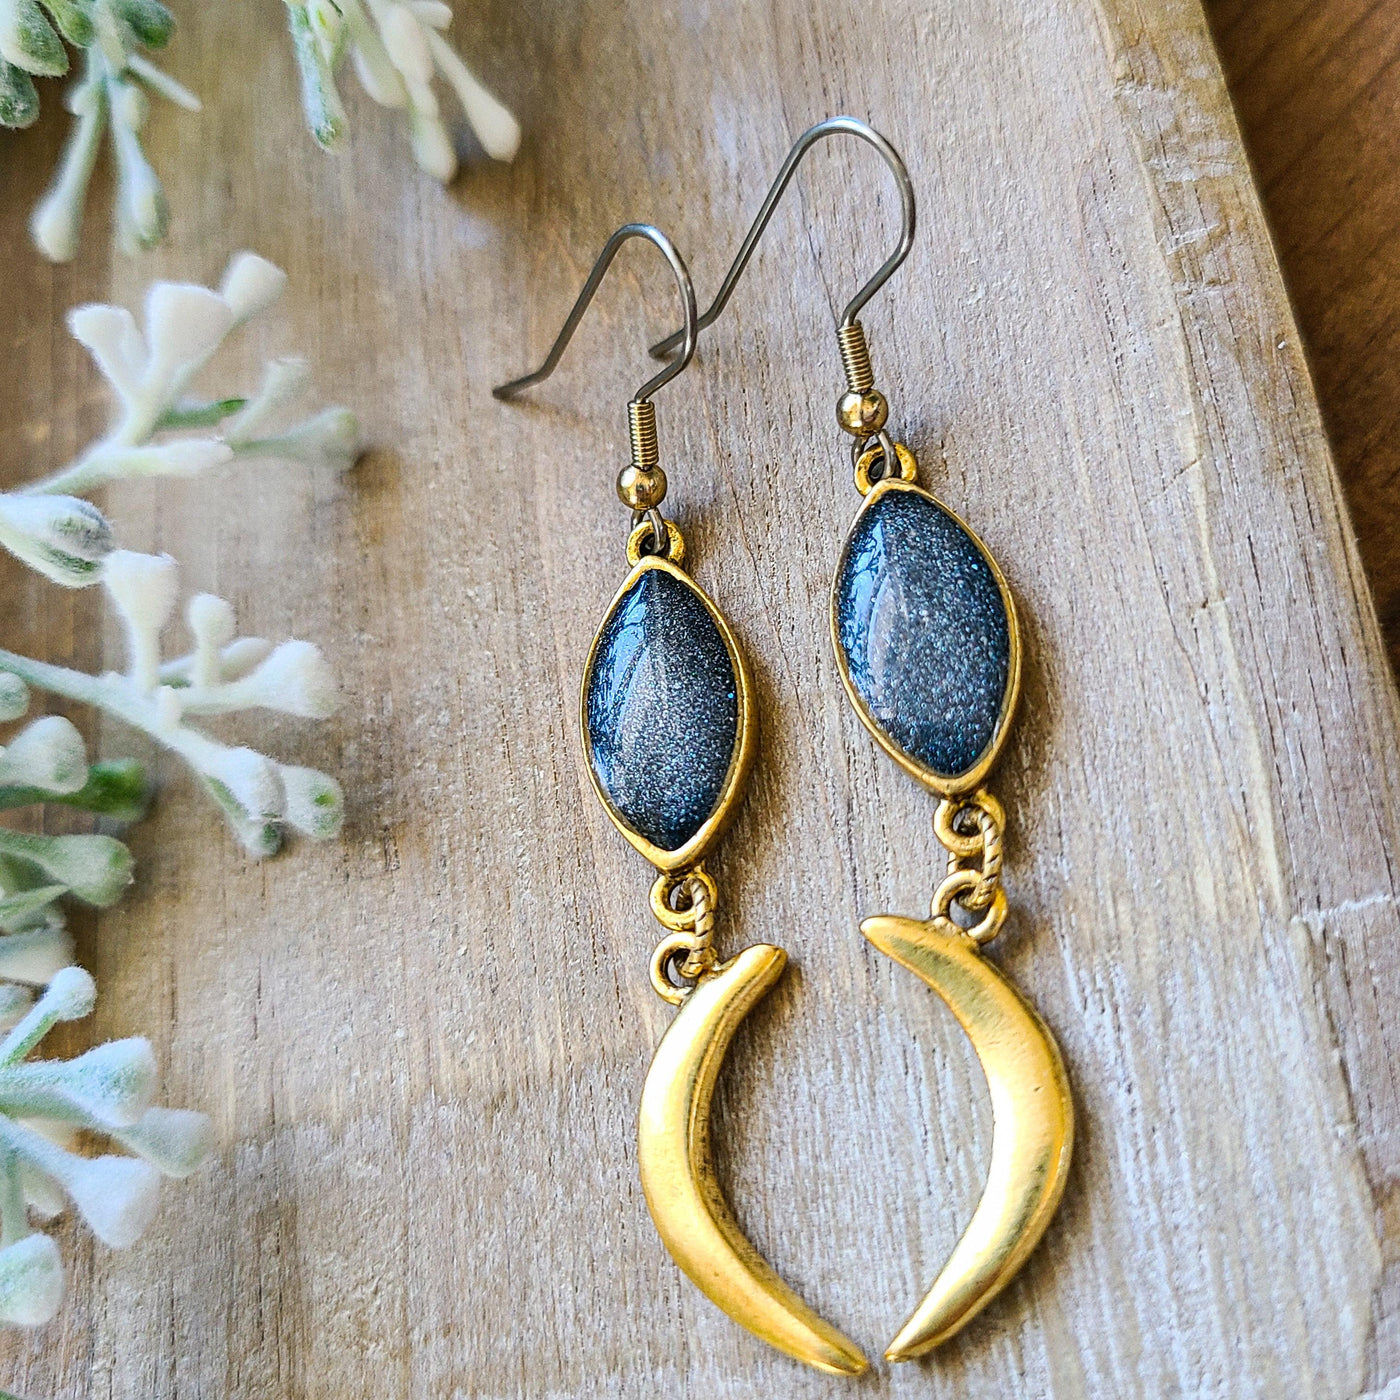 Galaxy Navette + Crescent Moon Earrings | Earrings - Little Blue Bus Jewelry